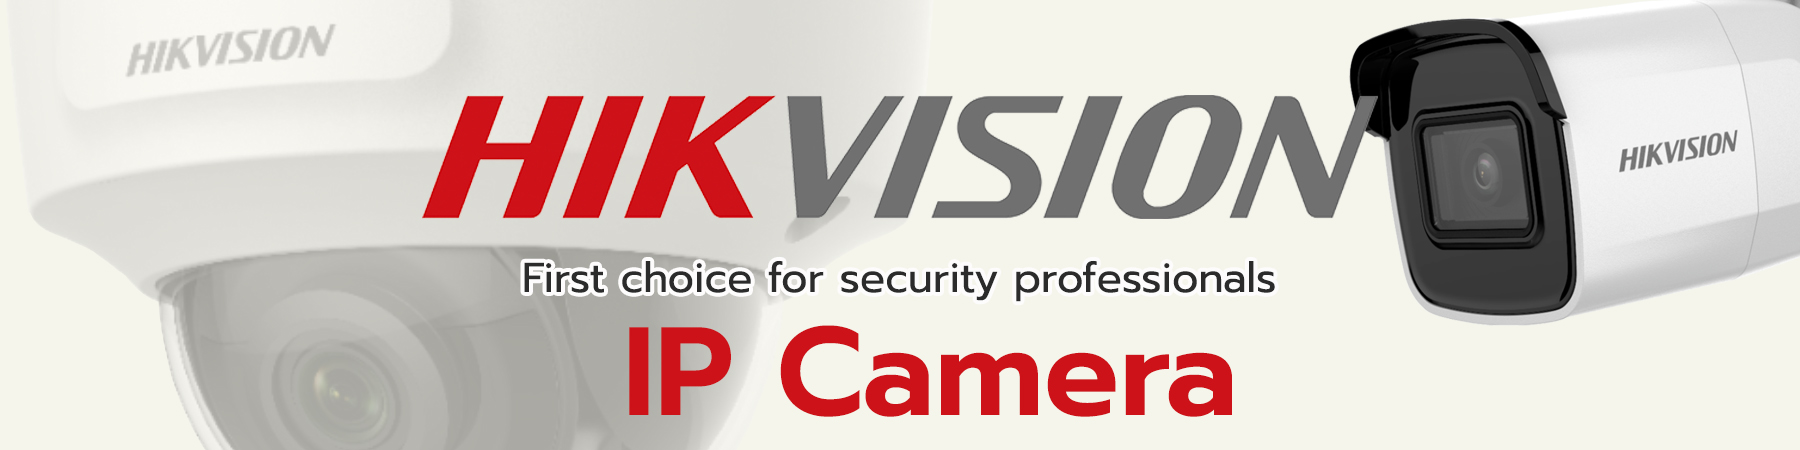 Hikvision IPC,Hikvision IP Camera,Hikvision EasyIP1.0,Hikvision EasyIP1.0 Plus,Hikvision EasyIP1.0,Hikvision EasyIP3.0,Hikvision EasyIP4.0 ColorVu,Hikvision EasyIP4.0 Acusense